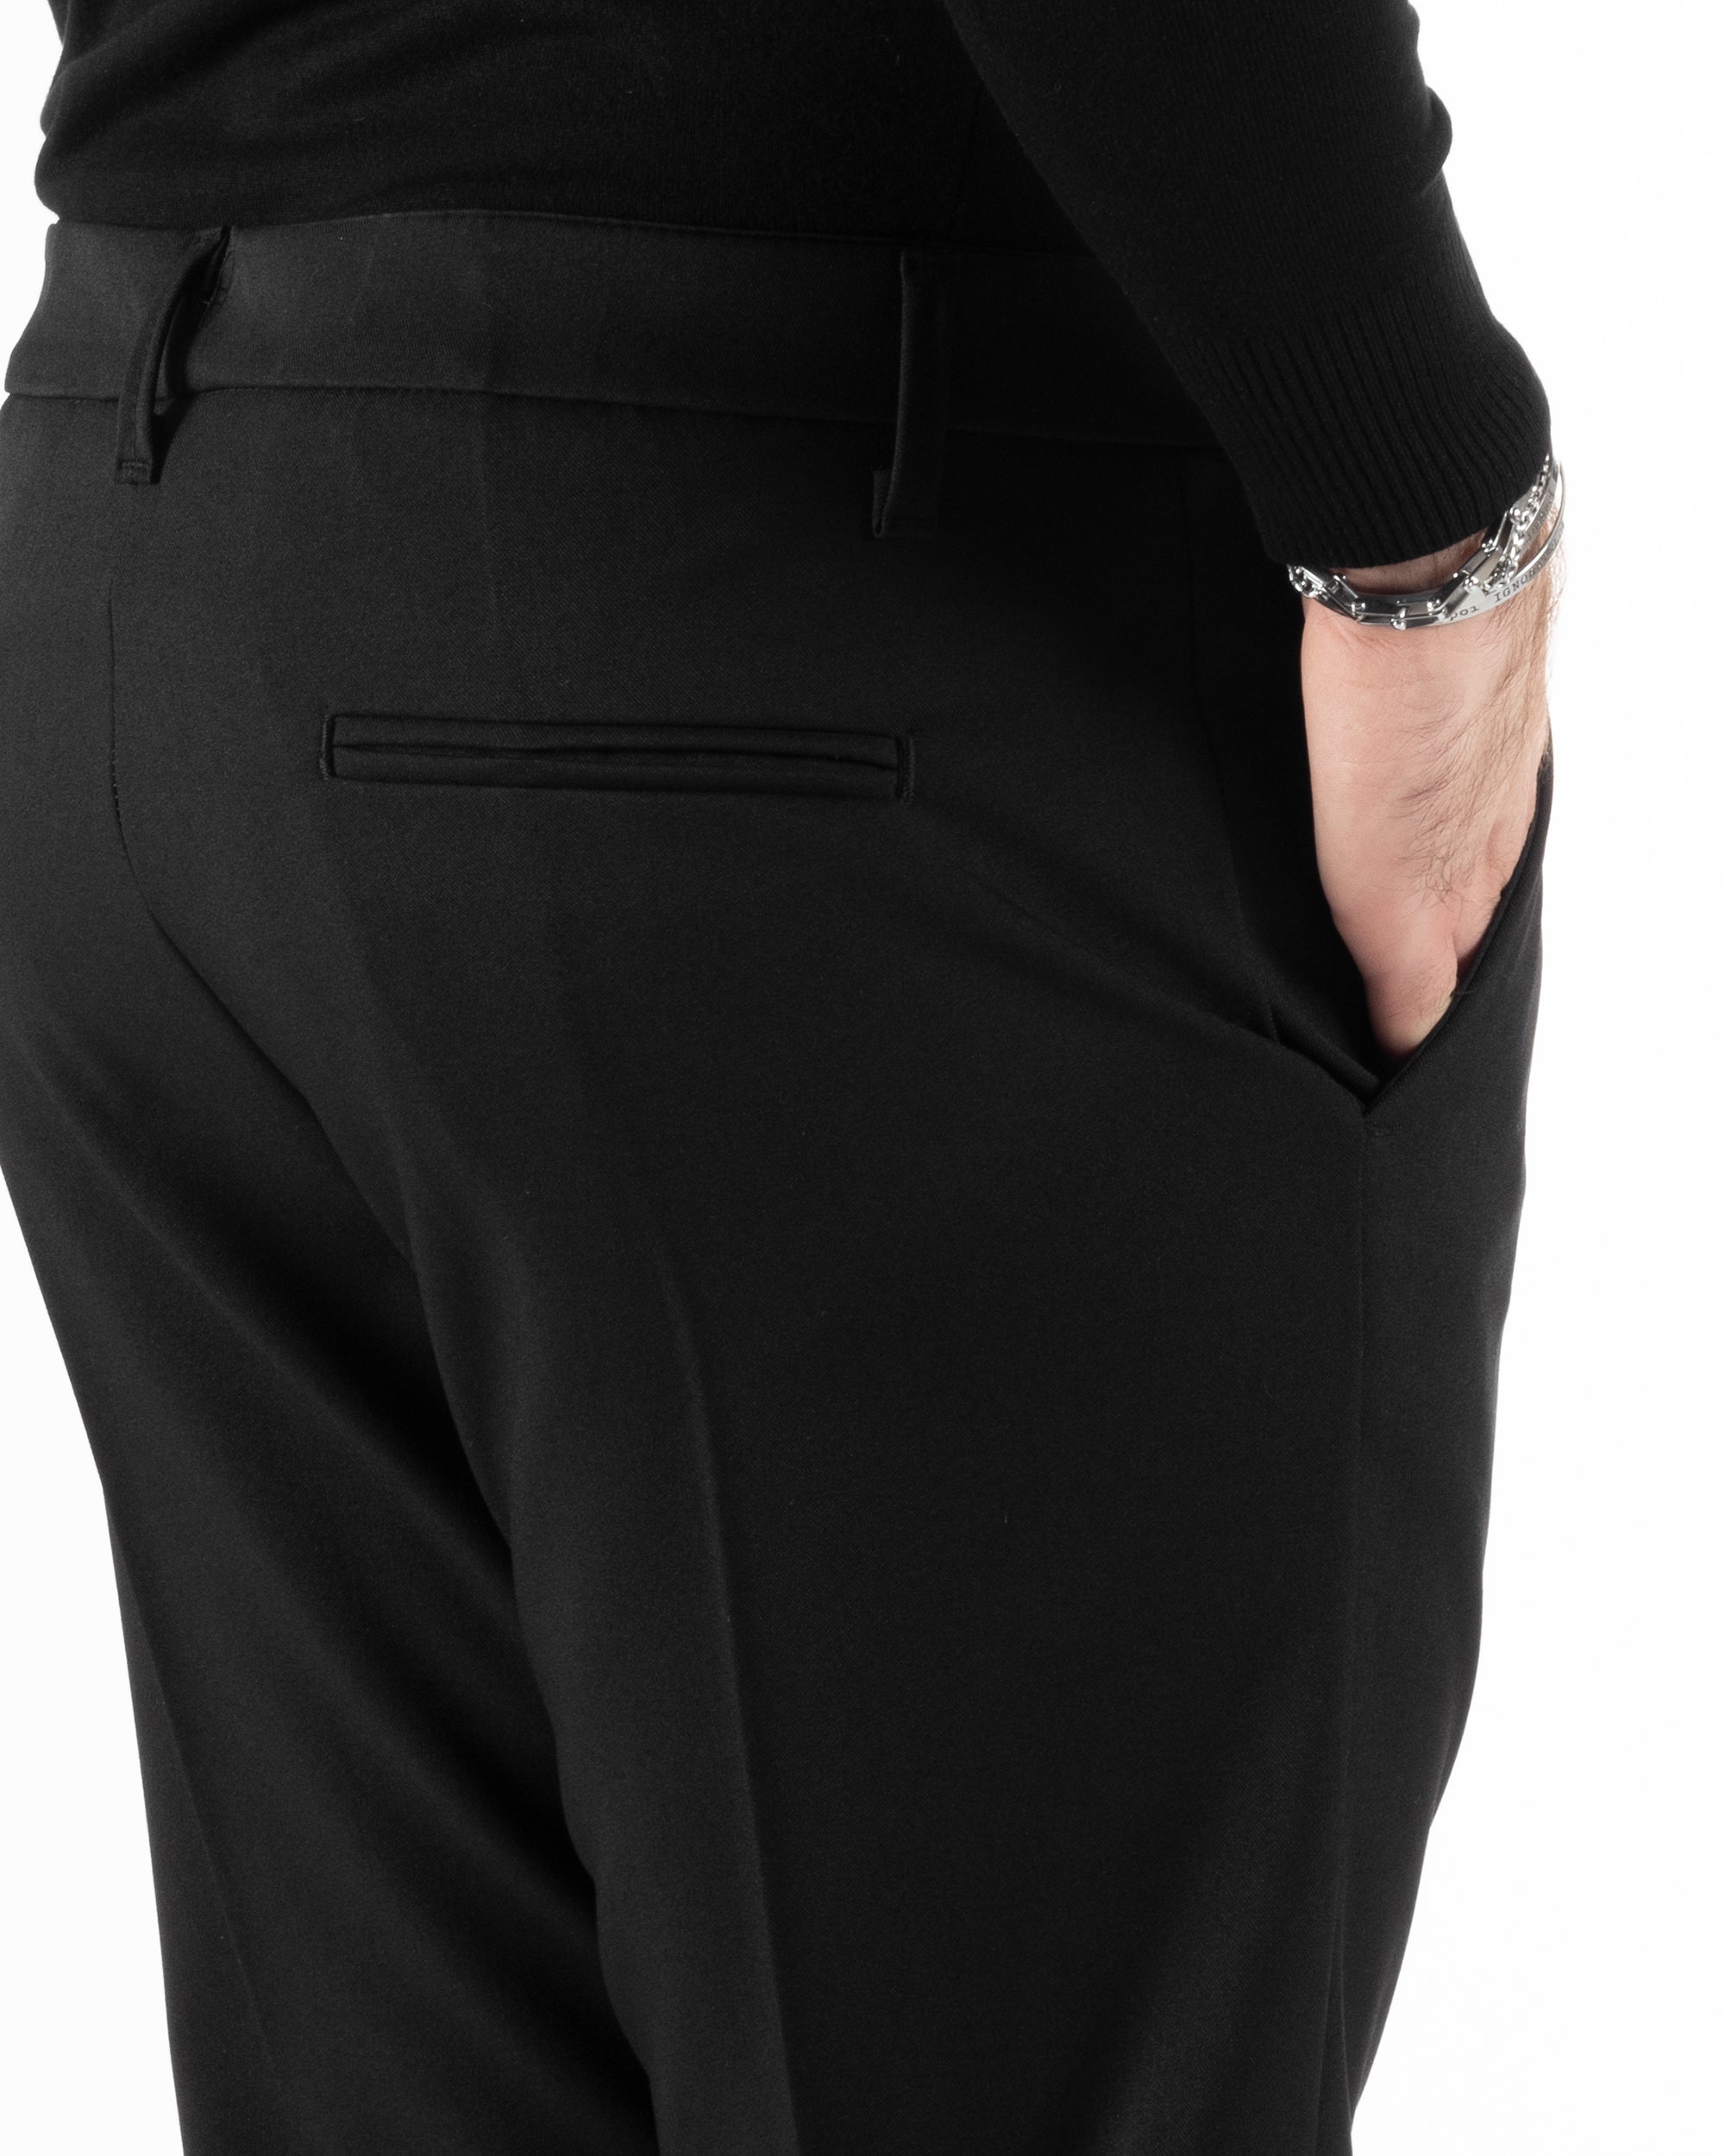 Pantaloni Uomo Viscosa Tasca America Classico Abbottonatura Allungata Casual Nero GIOSAL-P6011A